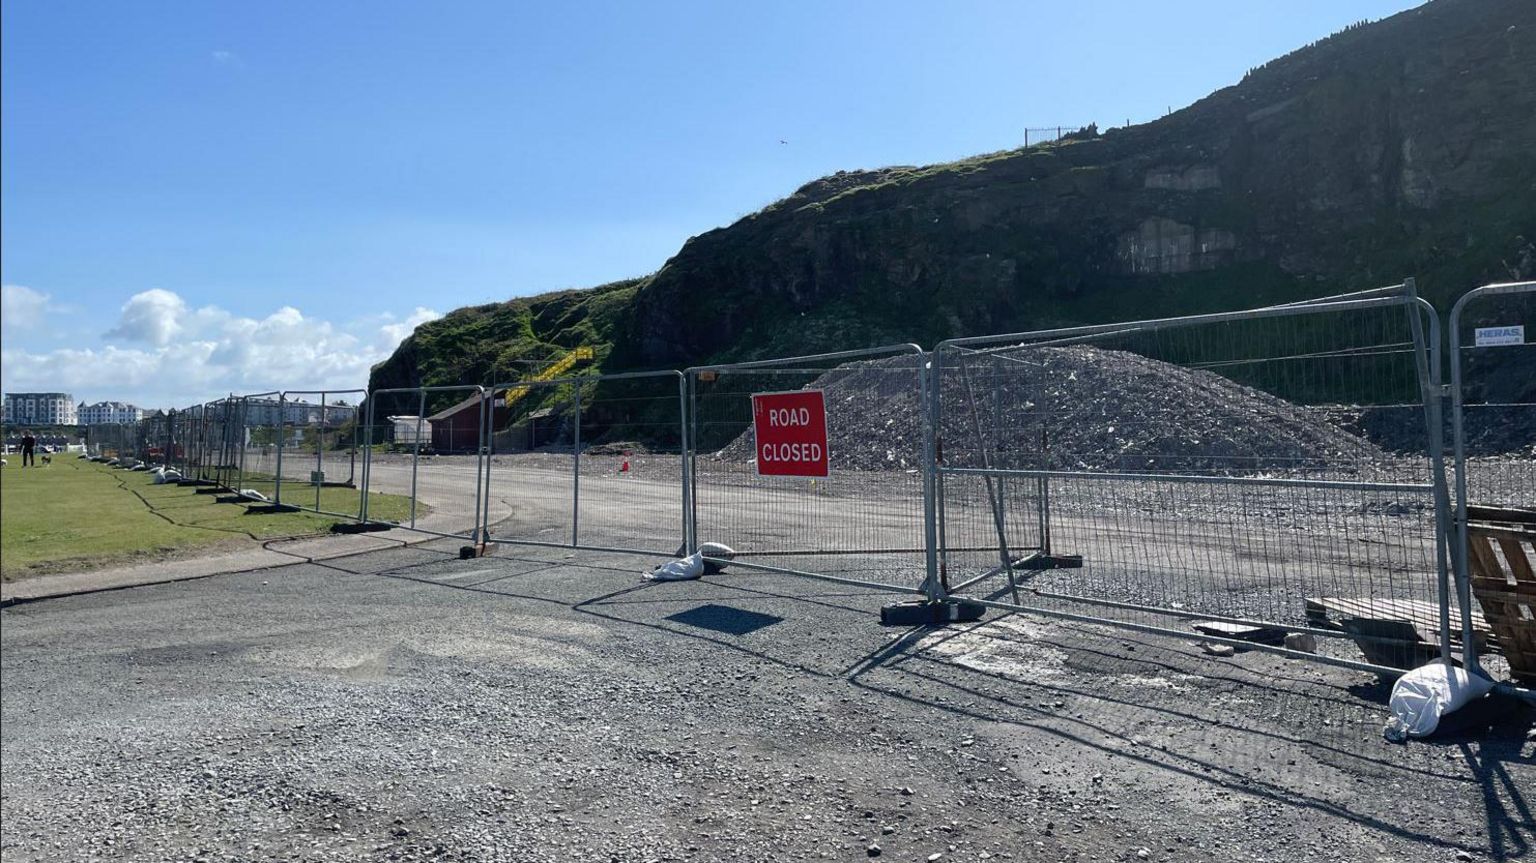 Demolition site of Port Erin marine biology station